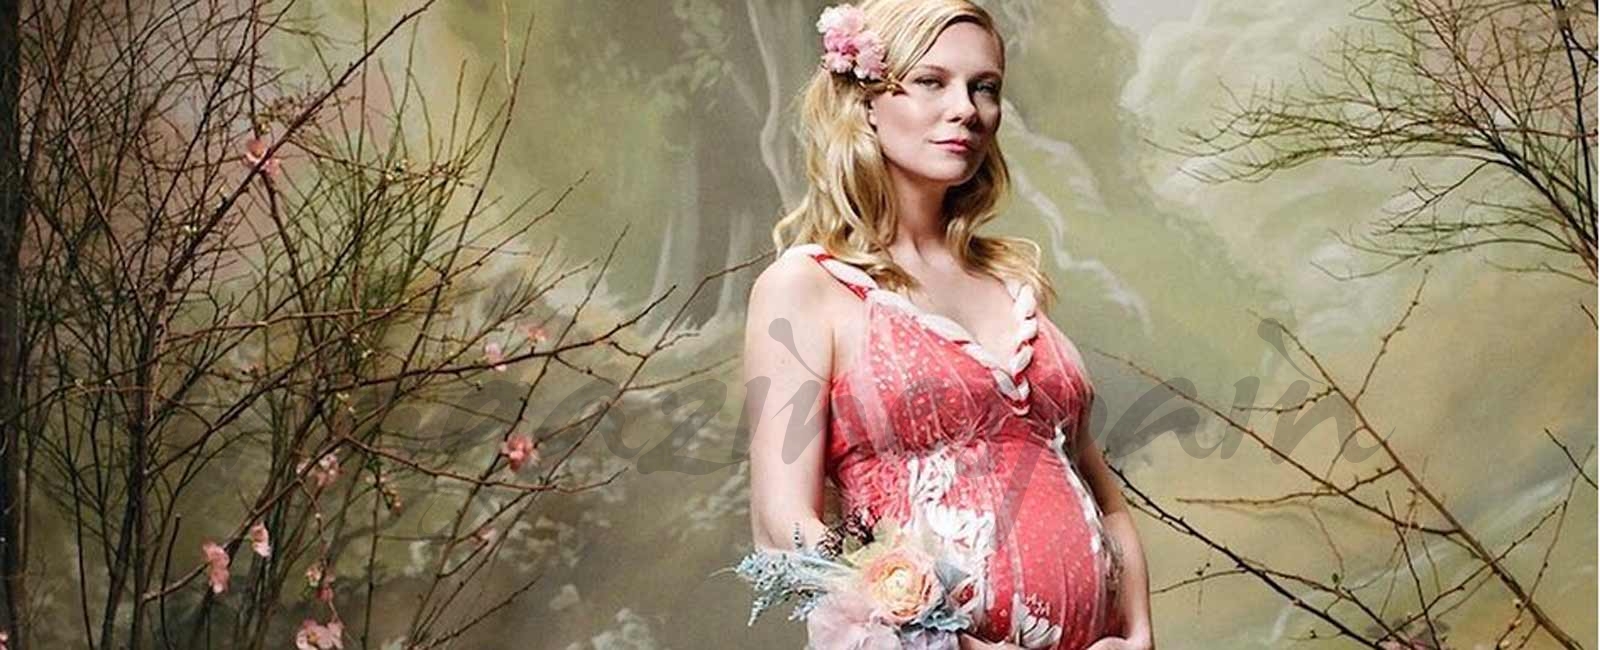 La original forma de Kirsten Dunst de confirmar su embarazo